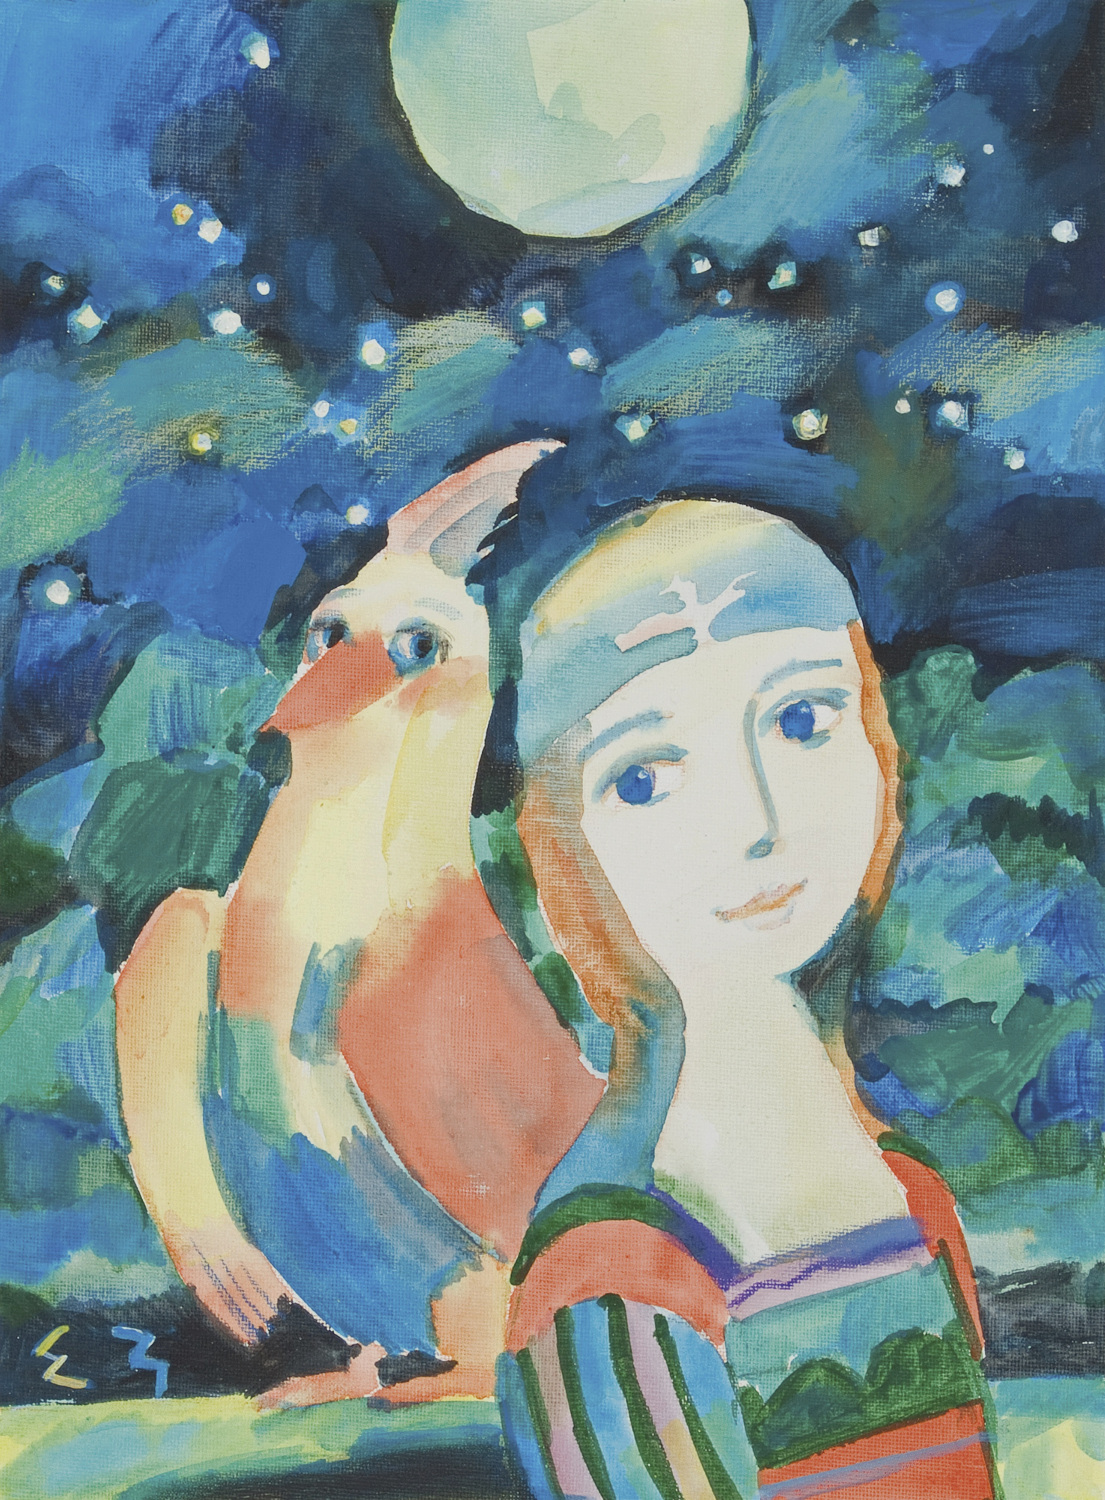    Мир сказки Елены Зарубовой | Двойной портрет под луной